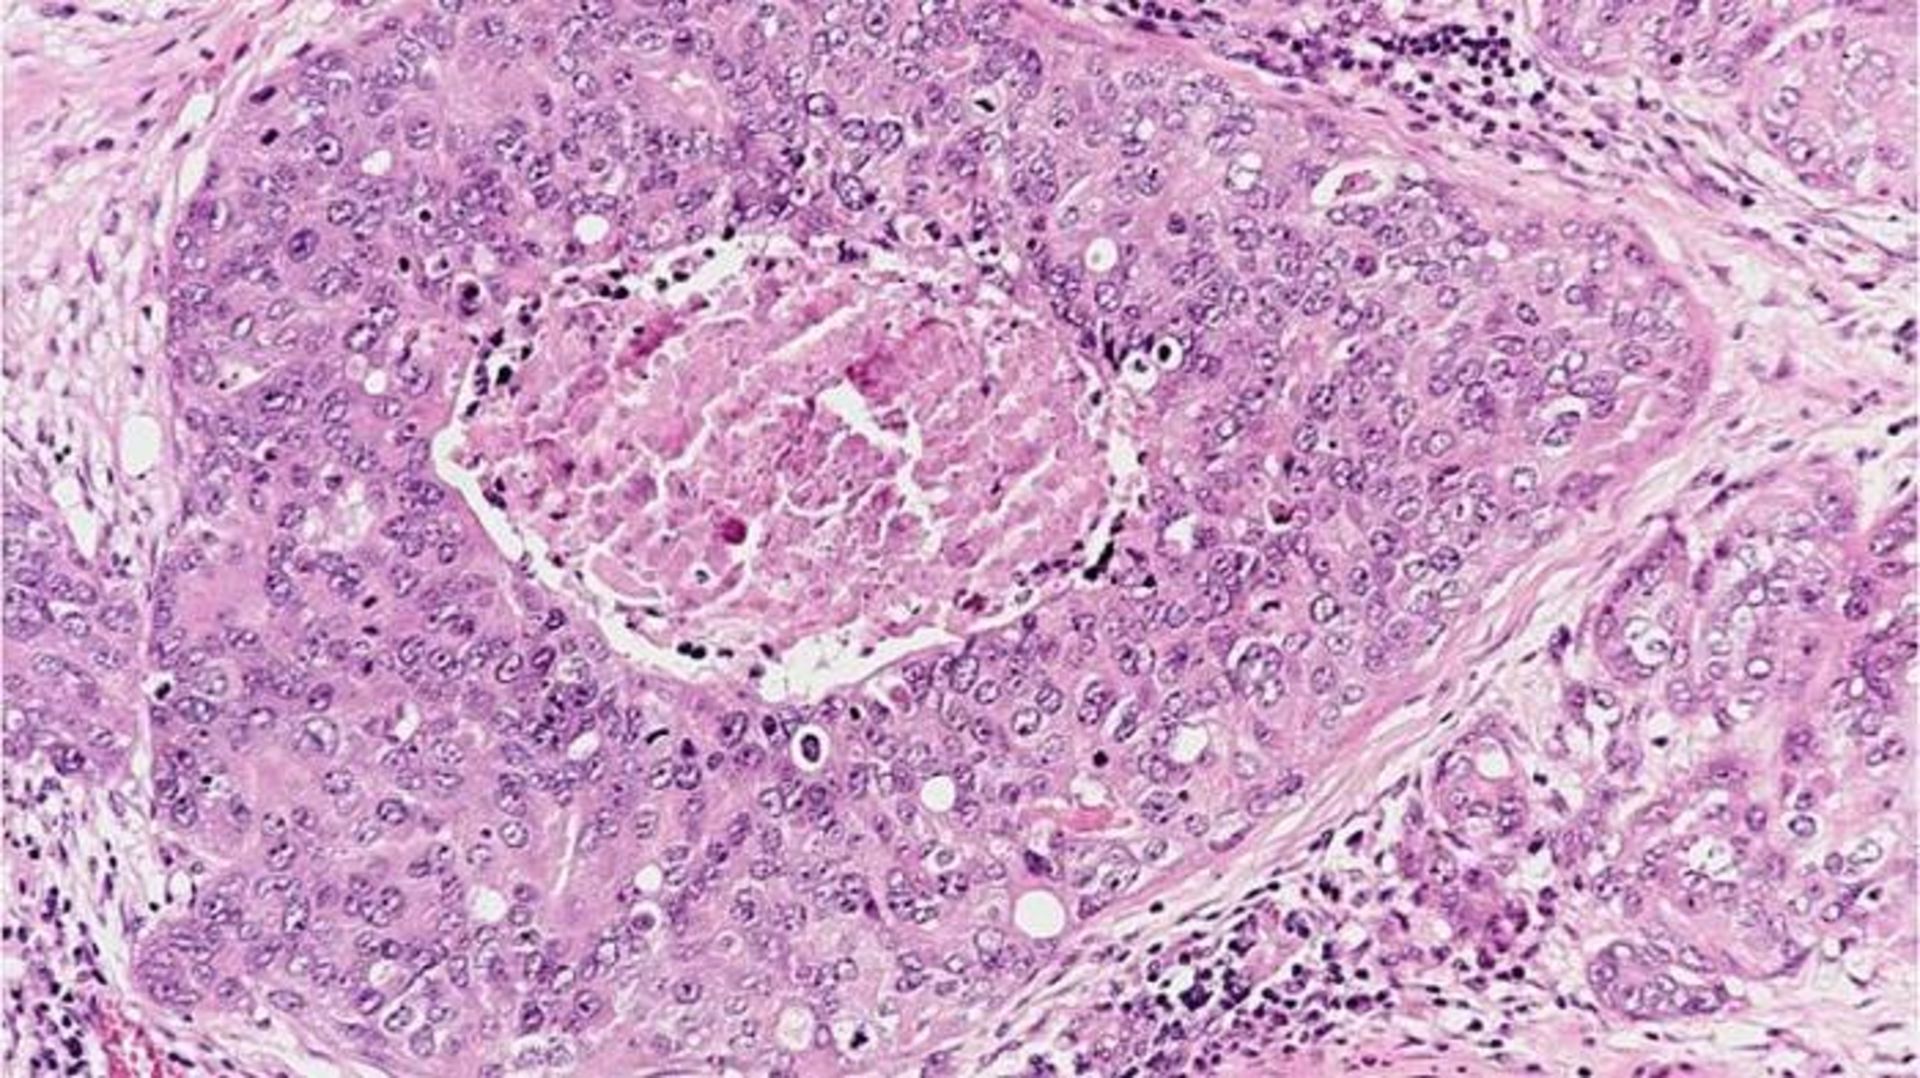 سلول های سرطان سینه / cancer